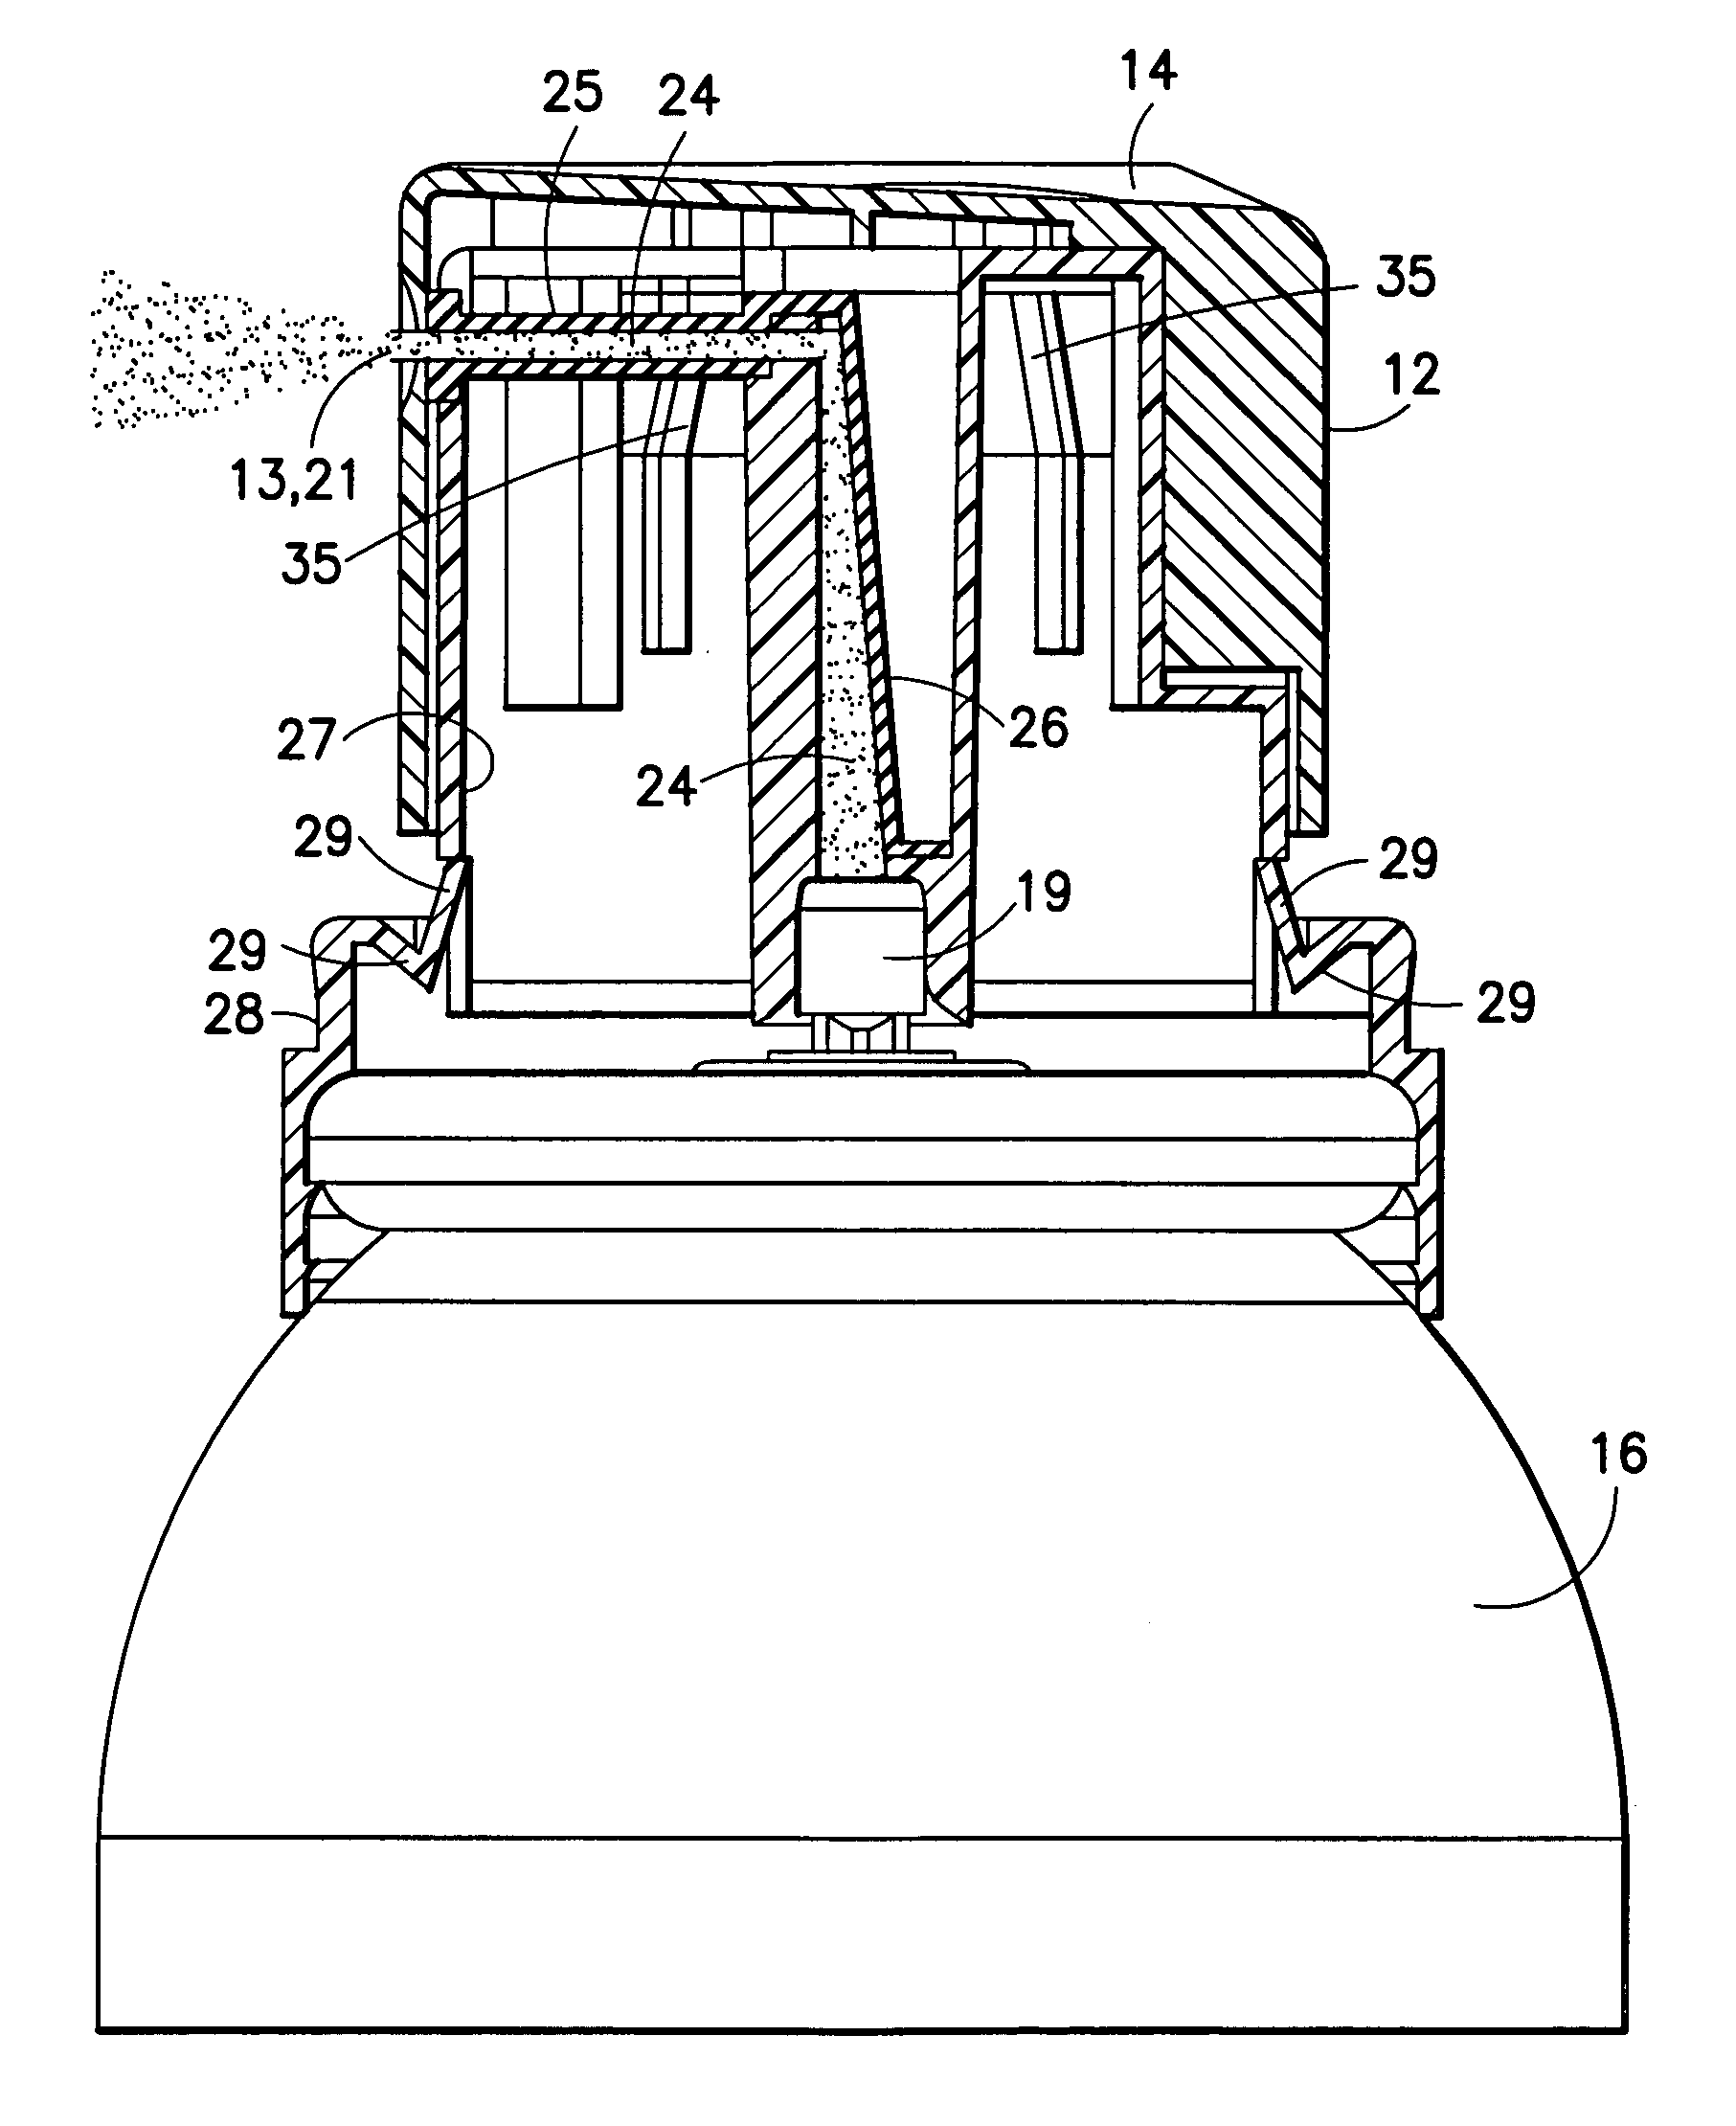 Aerosol valve actuator